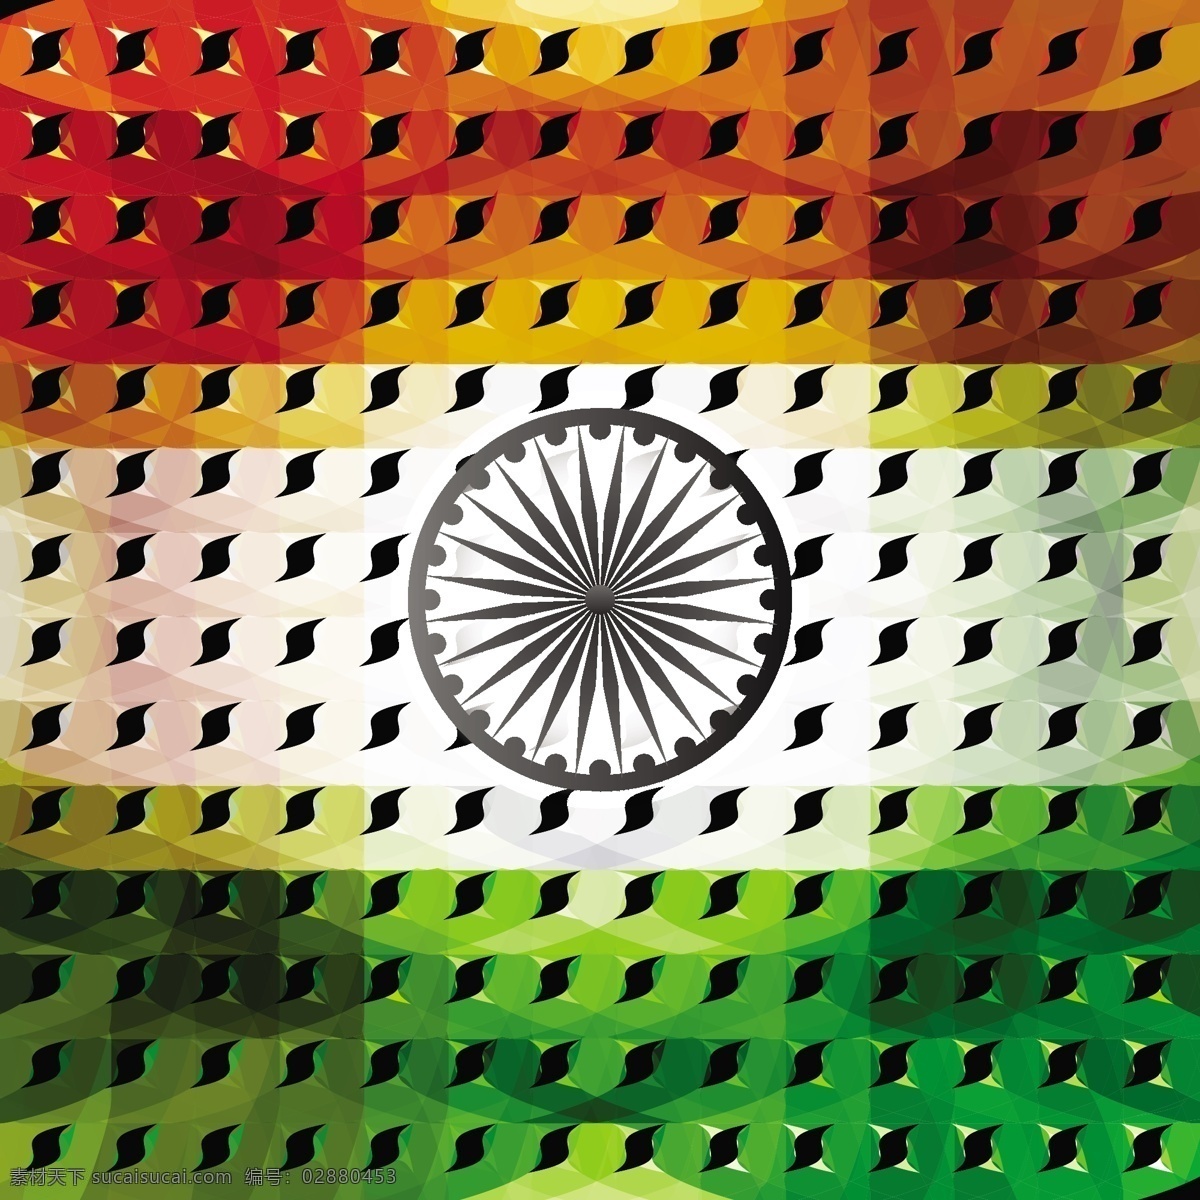 美丽 印度 国旗 现代 背景 抽象 节日 车轮 和平 印度国旗 独立日 国家 自由 一天 政府 波浪 爱国 一月 黑色